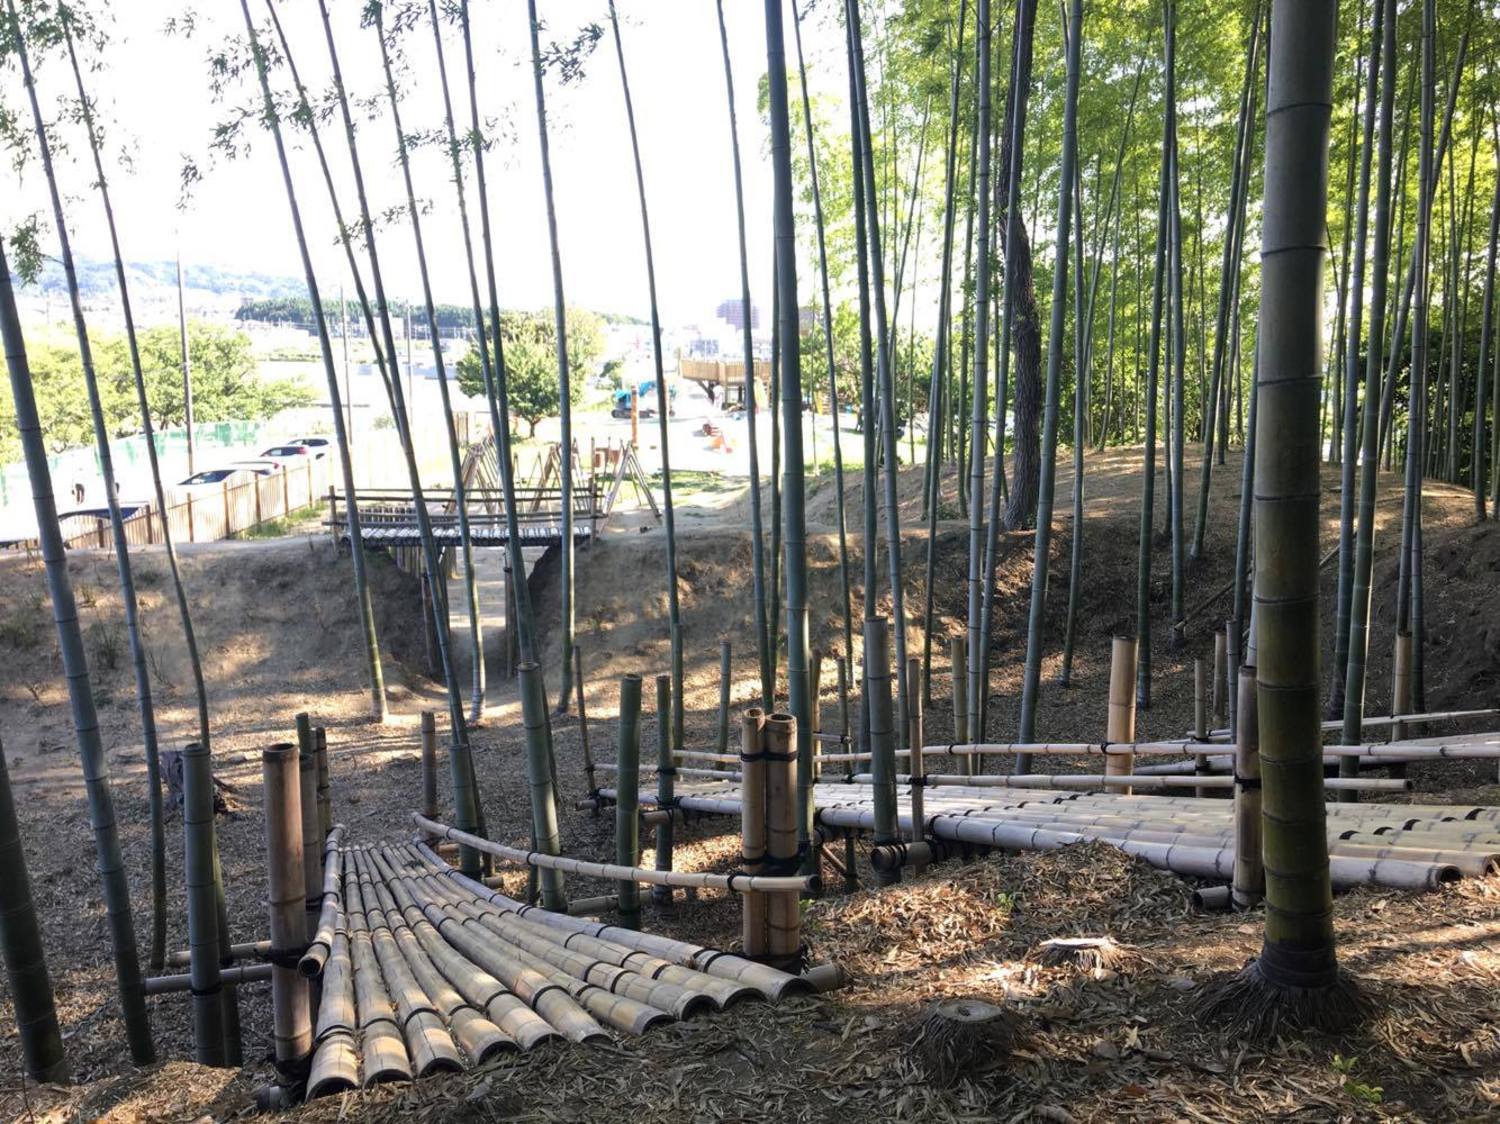 竹やぶの遊び場のお写真です